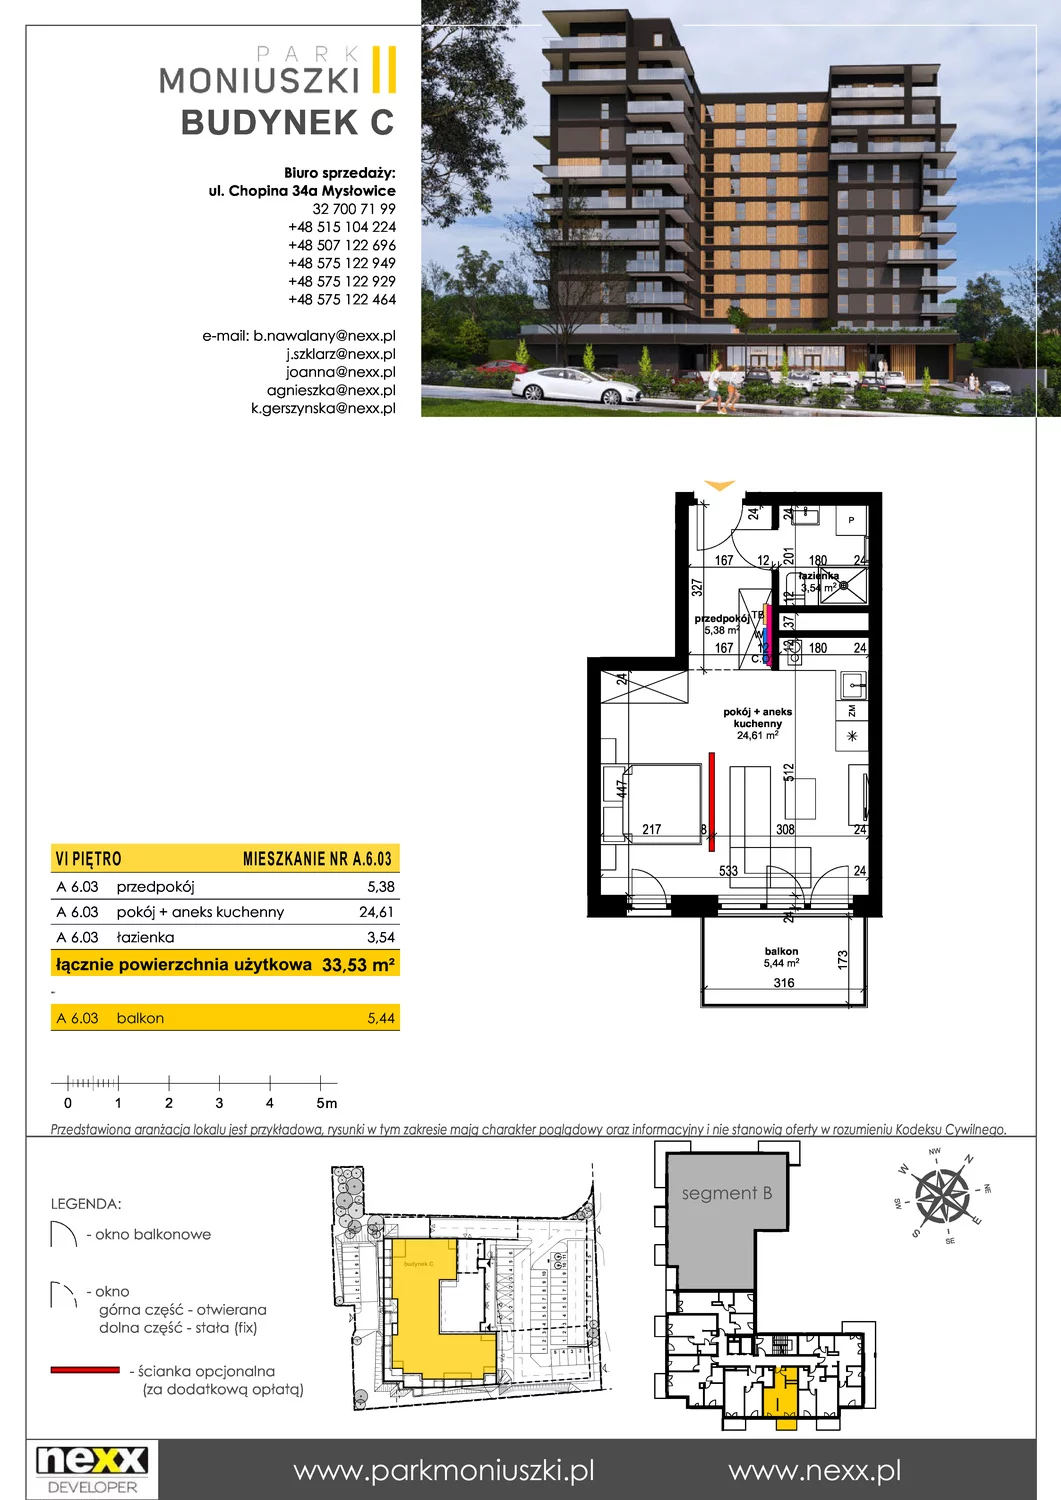 Mieszkanie 33,53 m², piętro 6, oferta nr A 6.03, Osiedle Park Moniuszki, Mysłowice, ul. Okrzei / Wielka Skotnica